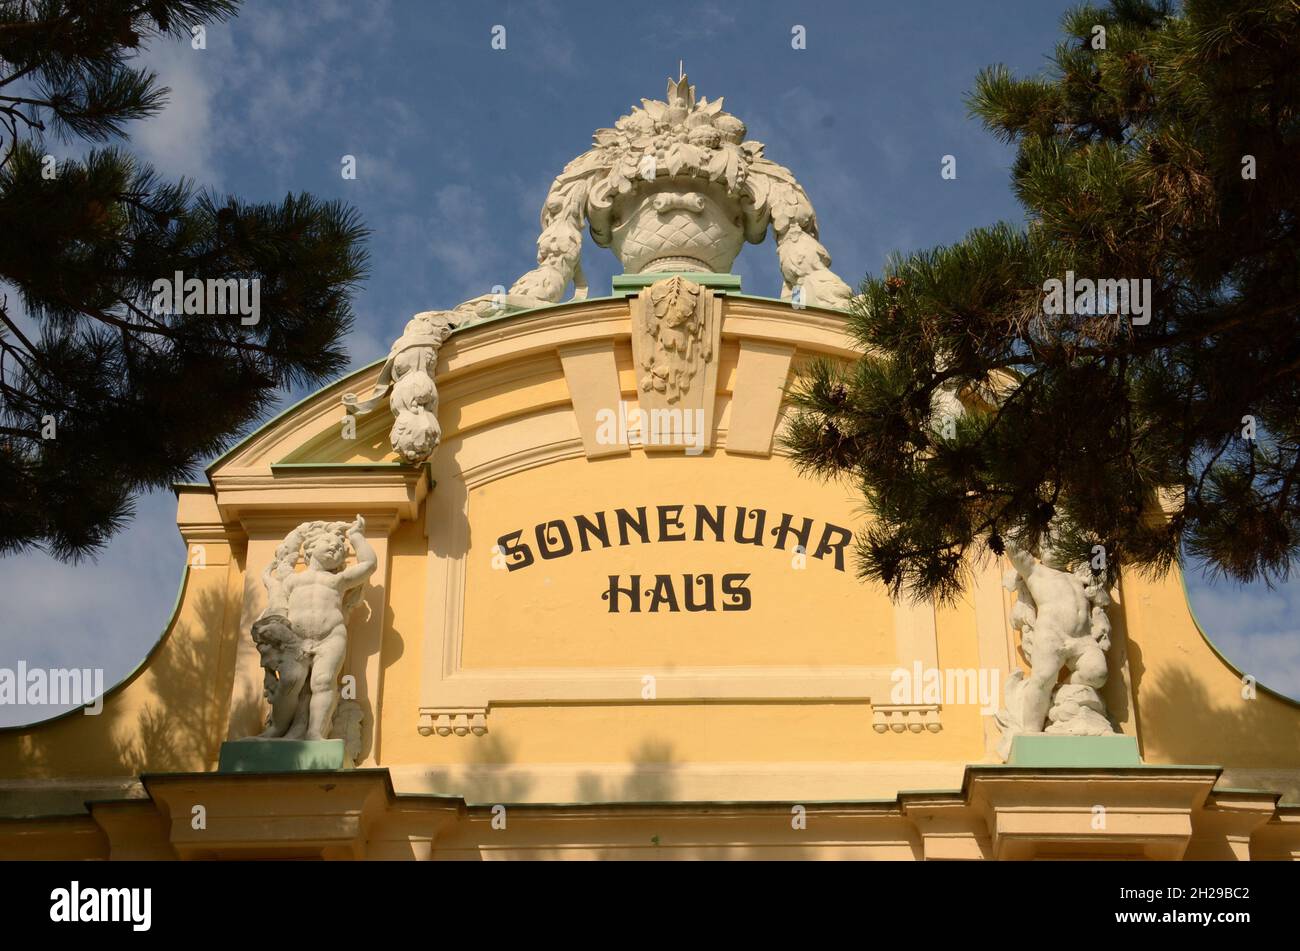 Das Palmenhaus Schönbrunn in Wien, Österreich, Europa - The Palmenhaus Schönbrunn in Vienna, Austria, Europe Stock Photo